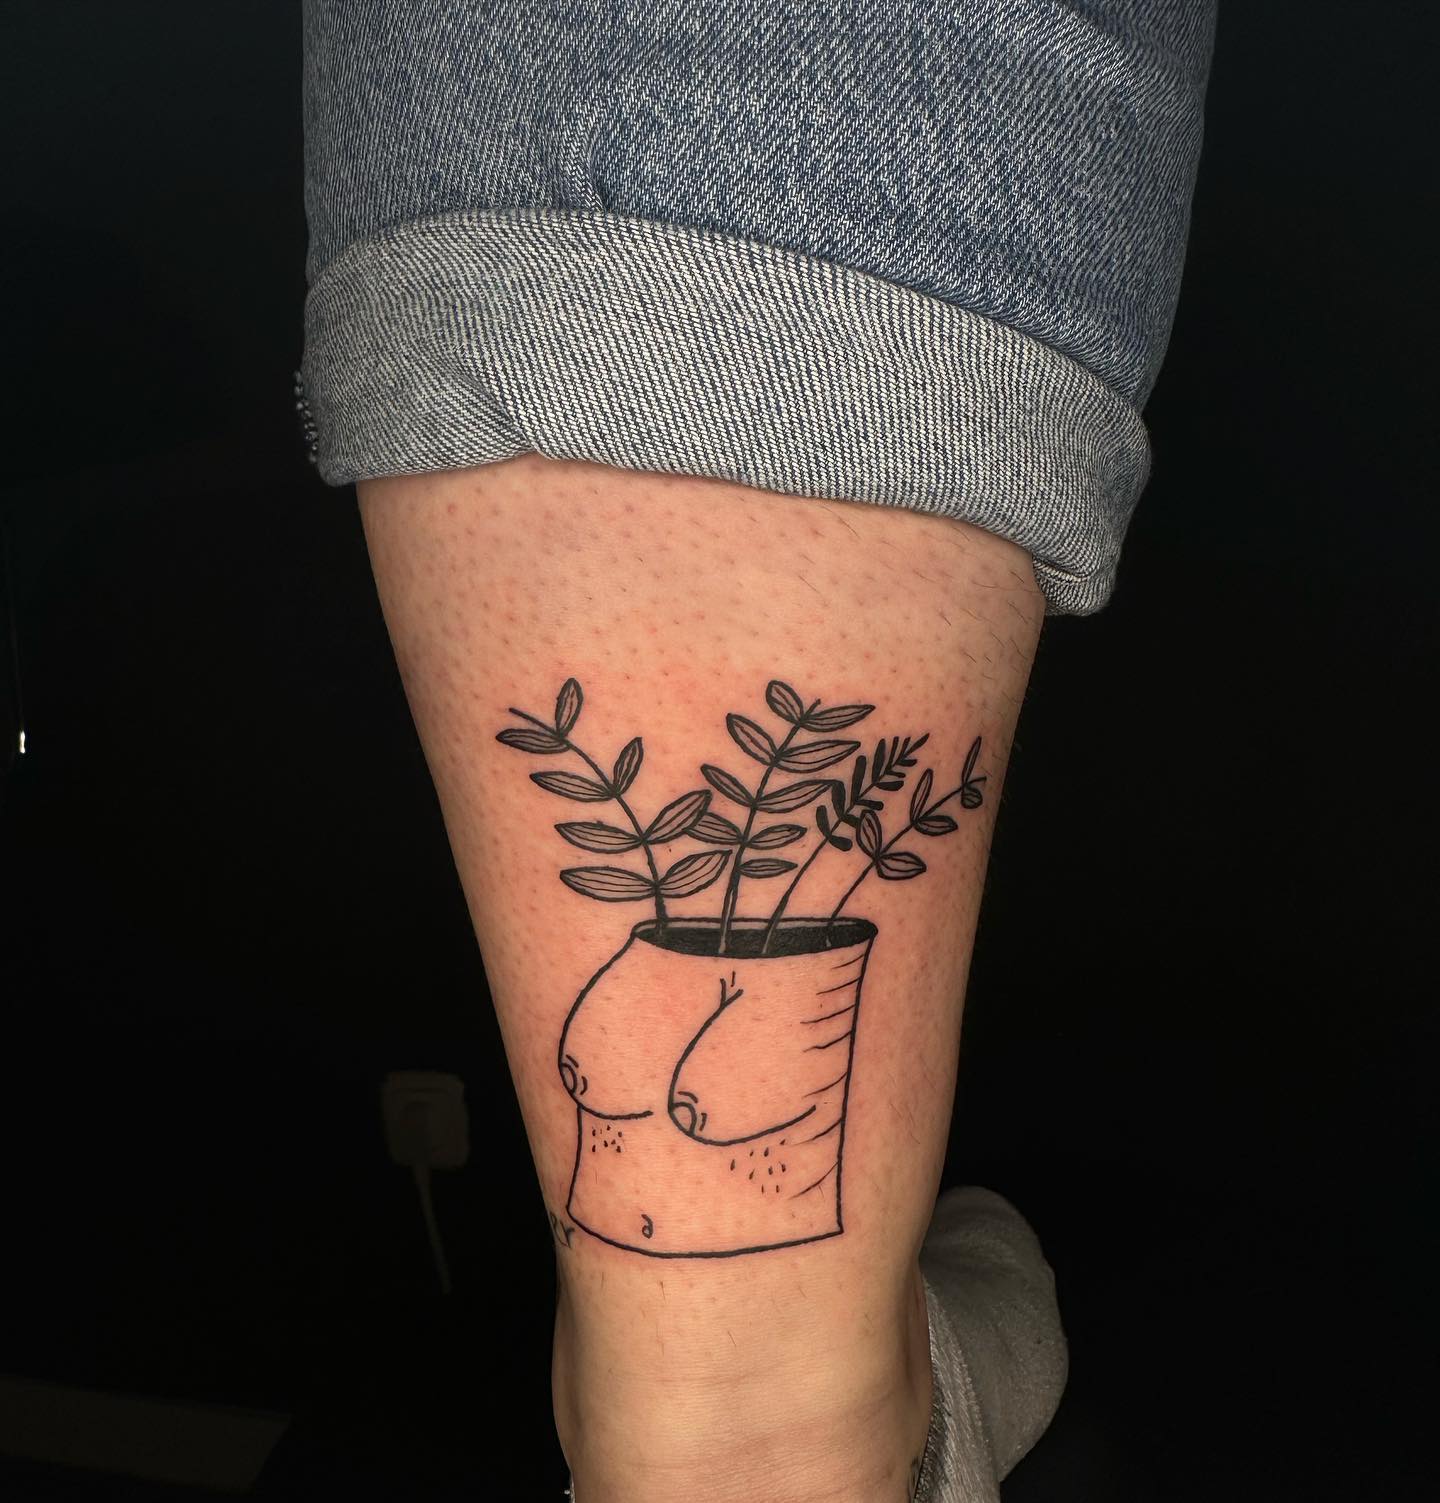 _boobs plant _ 
.
.
#imatattooartist #tattoo #tattoos #tattoocologne #kölntattoo